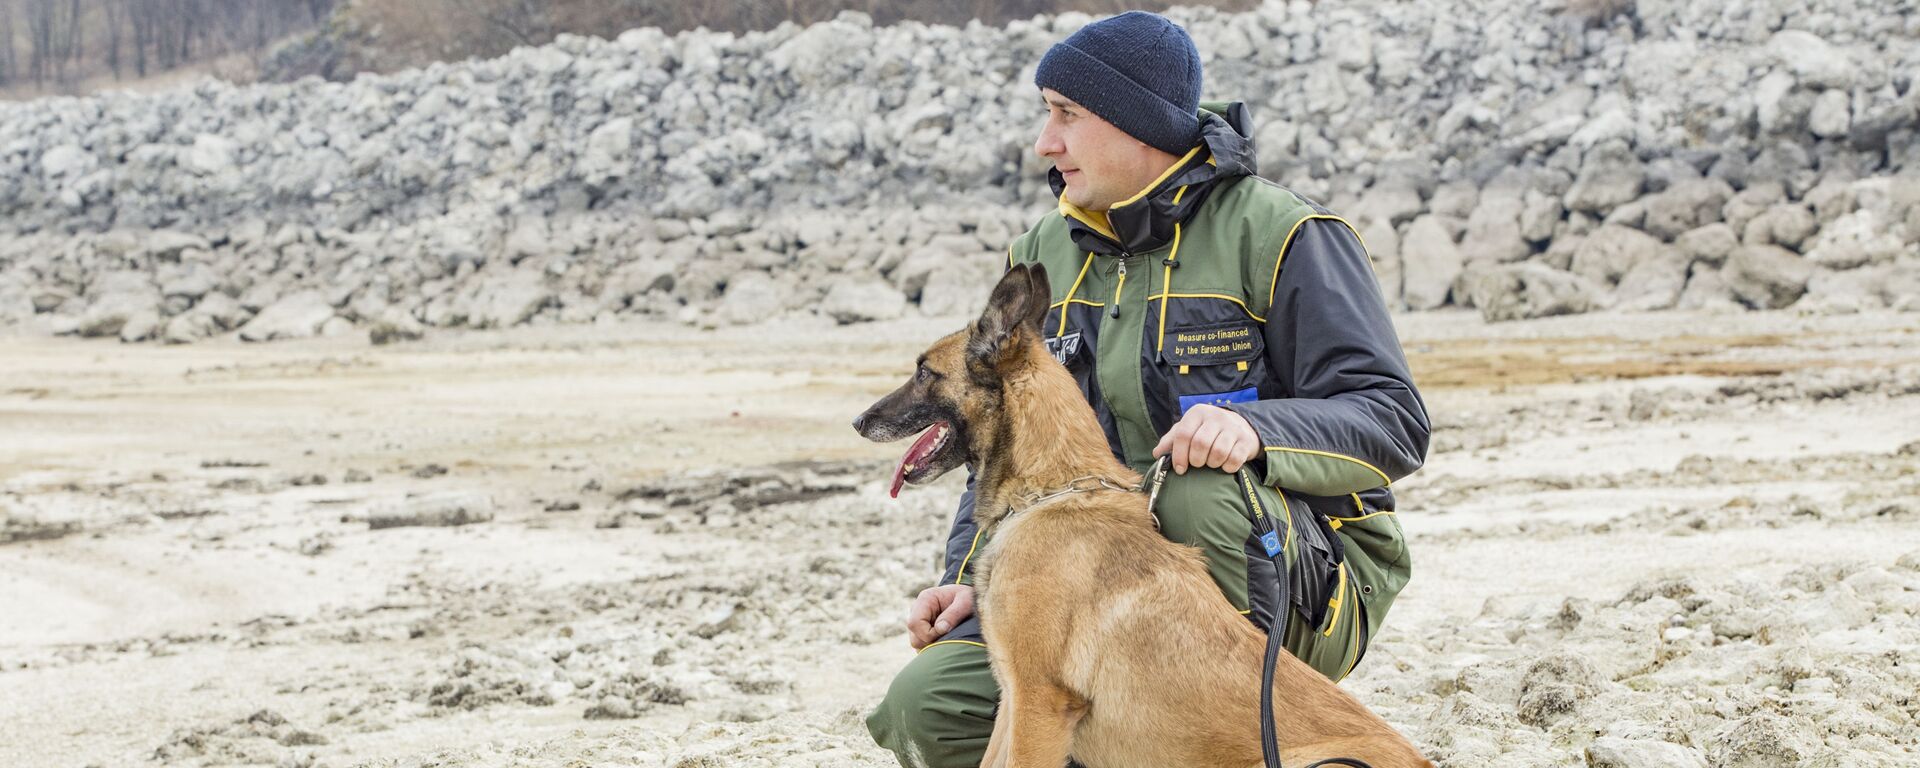 Служебные собаки Пограничной полиции Молдовы - Sputnik Молдова, 1920, 04.03.2021